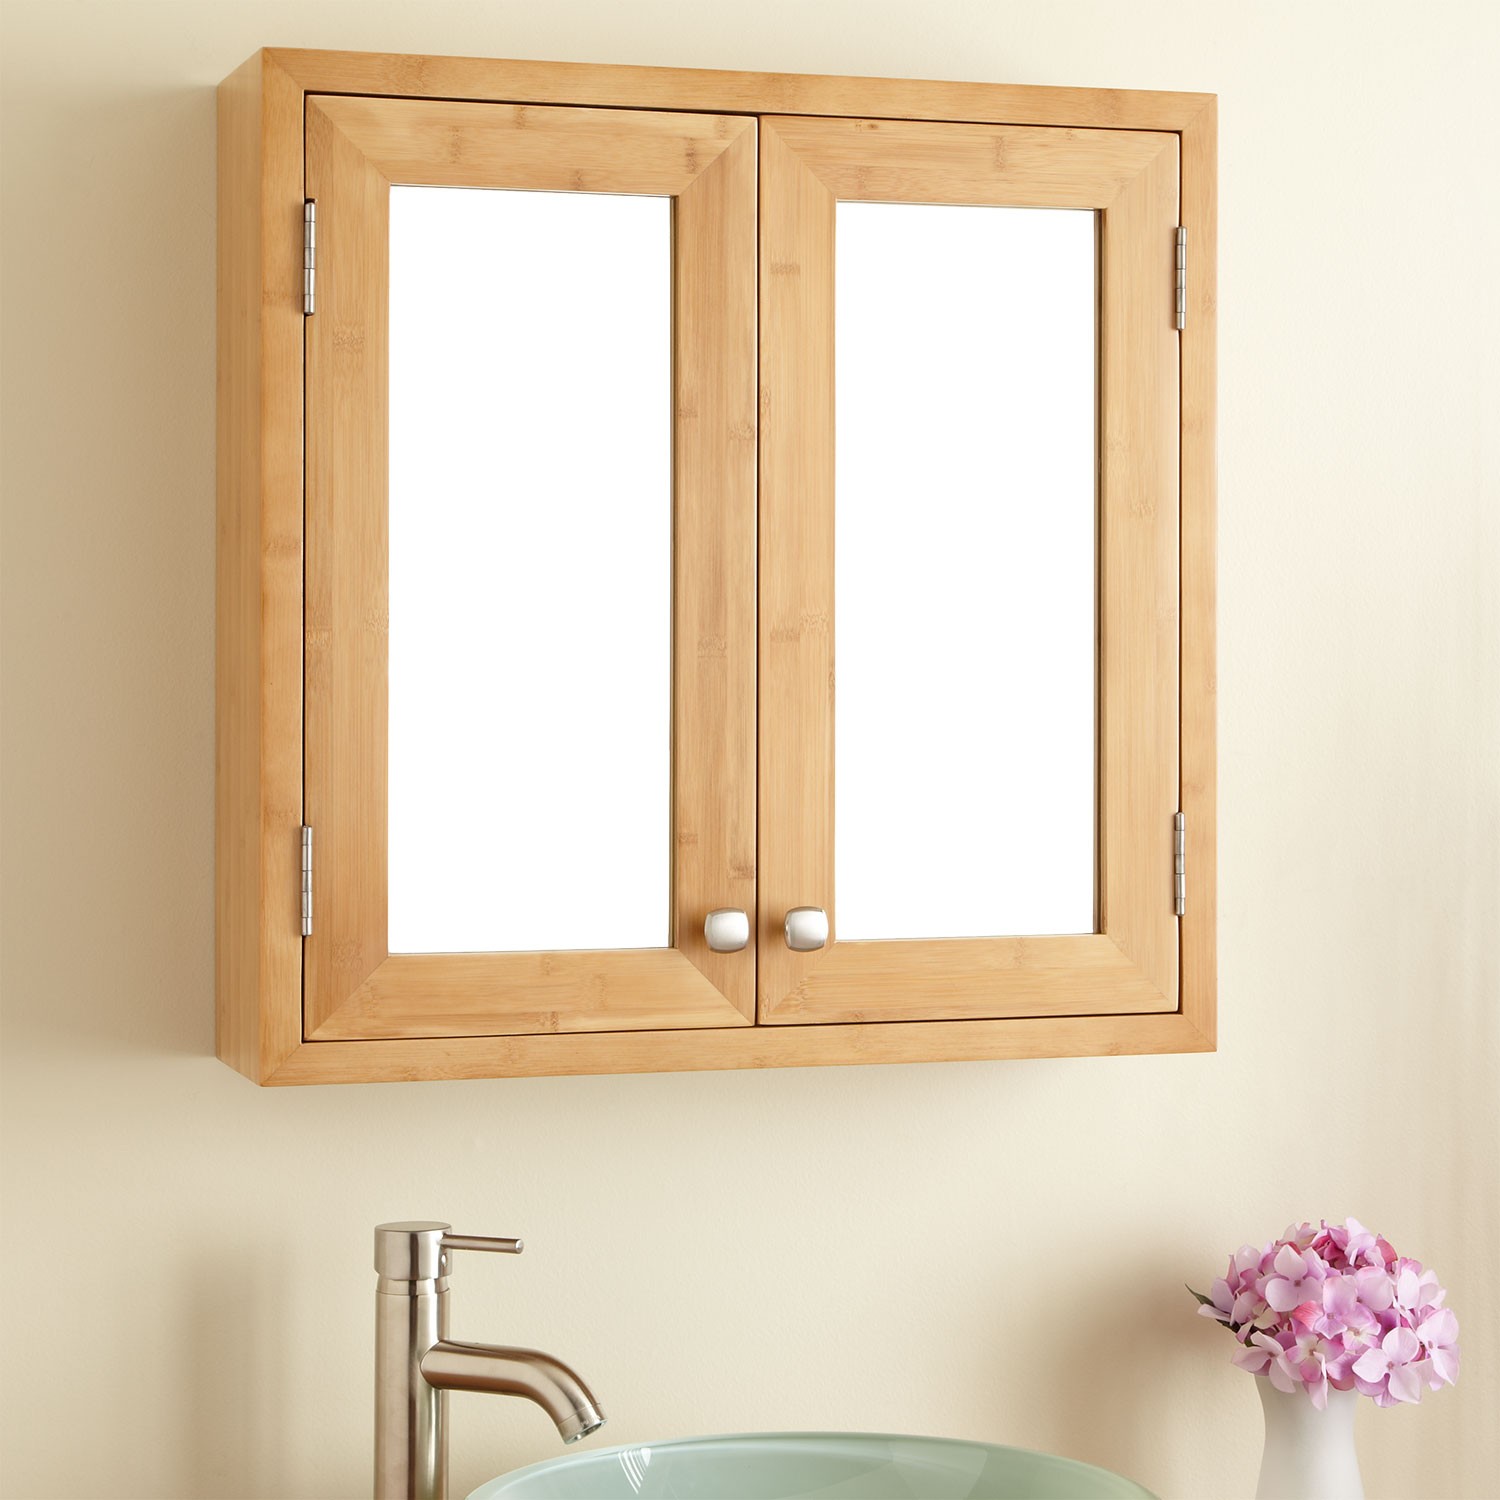 Home Ideas \u0026 Home Designs: Bathroom Medicine Cabinets with Mirror Design Ideas